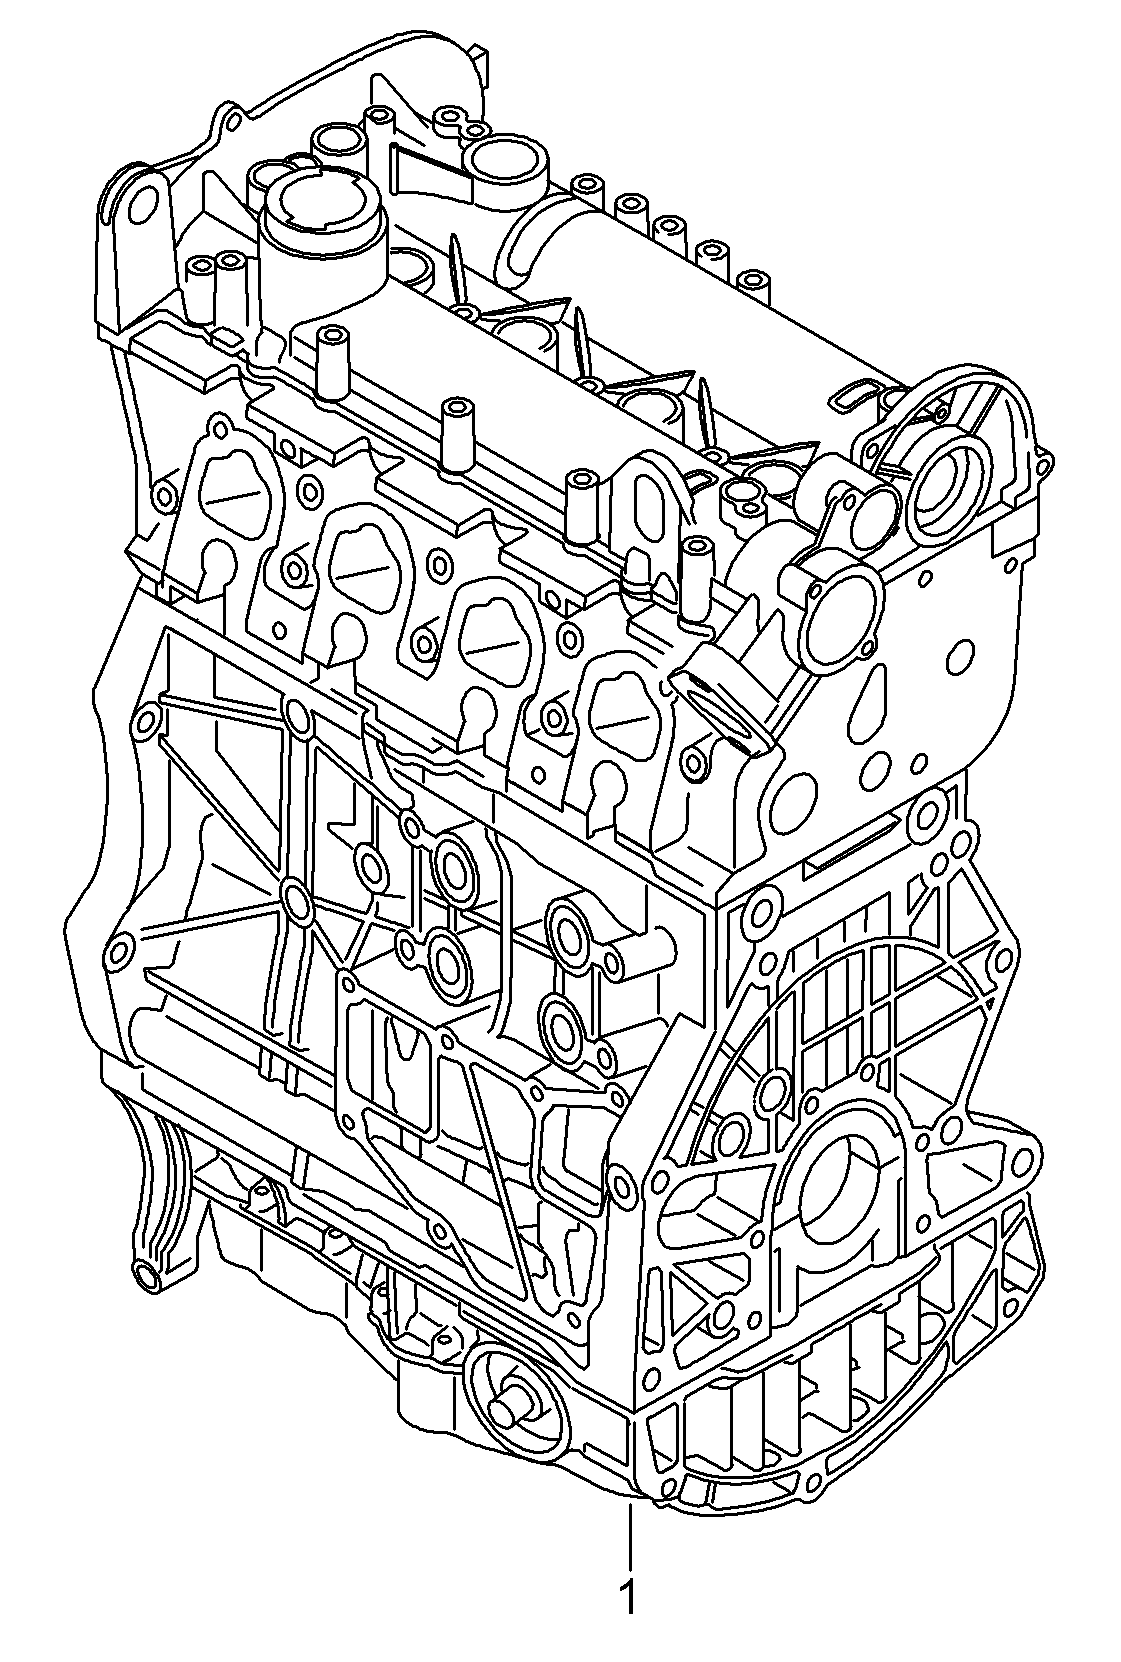 Rumpfmotor 1,2Ltr. - Golf/Variant/4Motion - golf